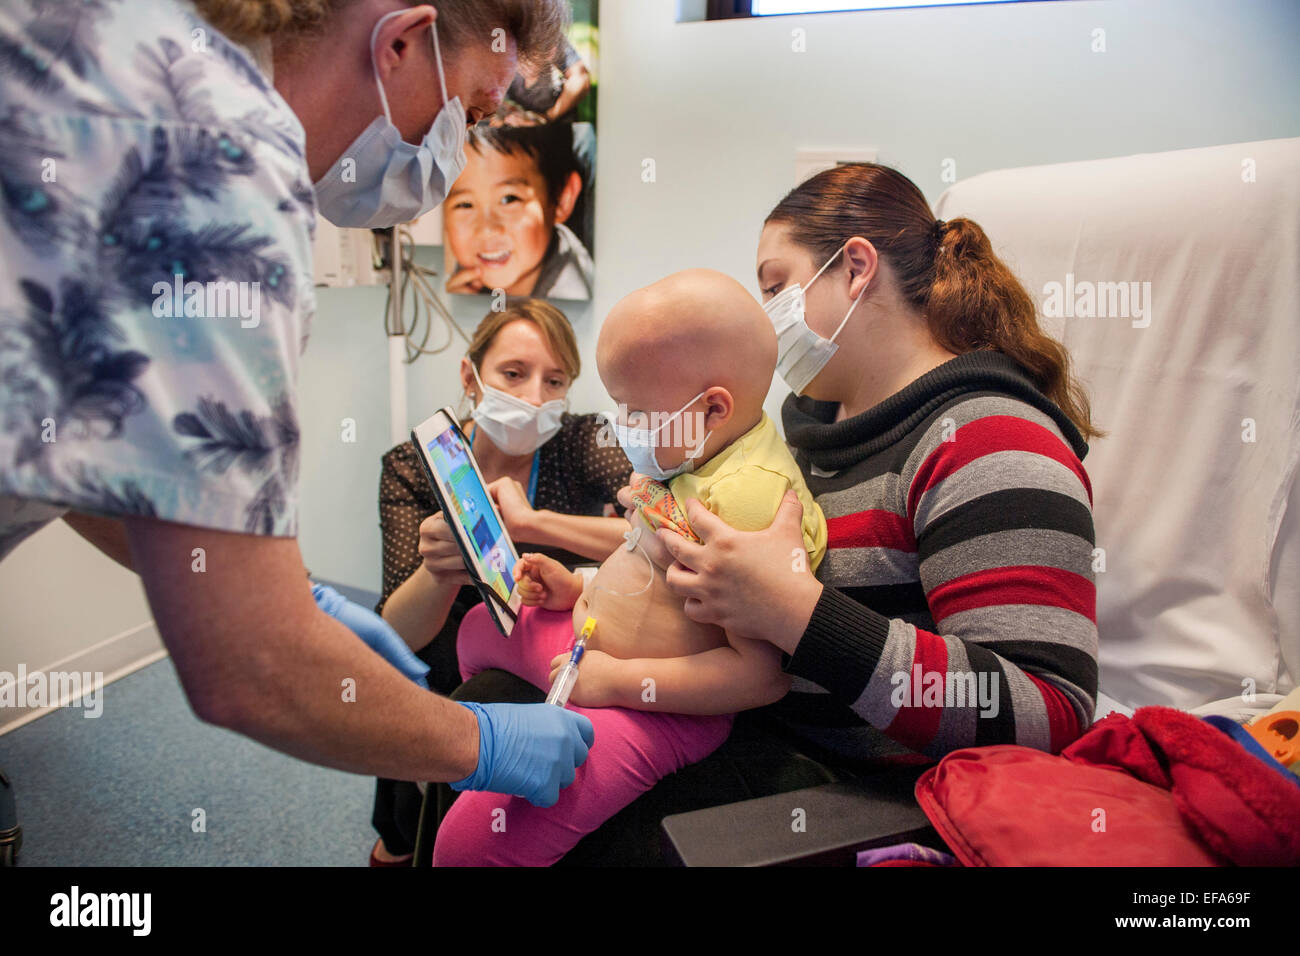 Ein Kind Leben Specialist bei CHOC Kinderkrankenhaus in Orange, CA, hält ein Computerprogramm Tablet um einen jungen hispanischen Mädchen Patienten eine Port-Zugriffsverfahren für Chemotherapie abzulenken. Hinweis: Masken, Krankenschwester und Glatze. Stockfoto